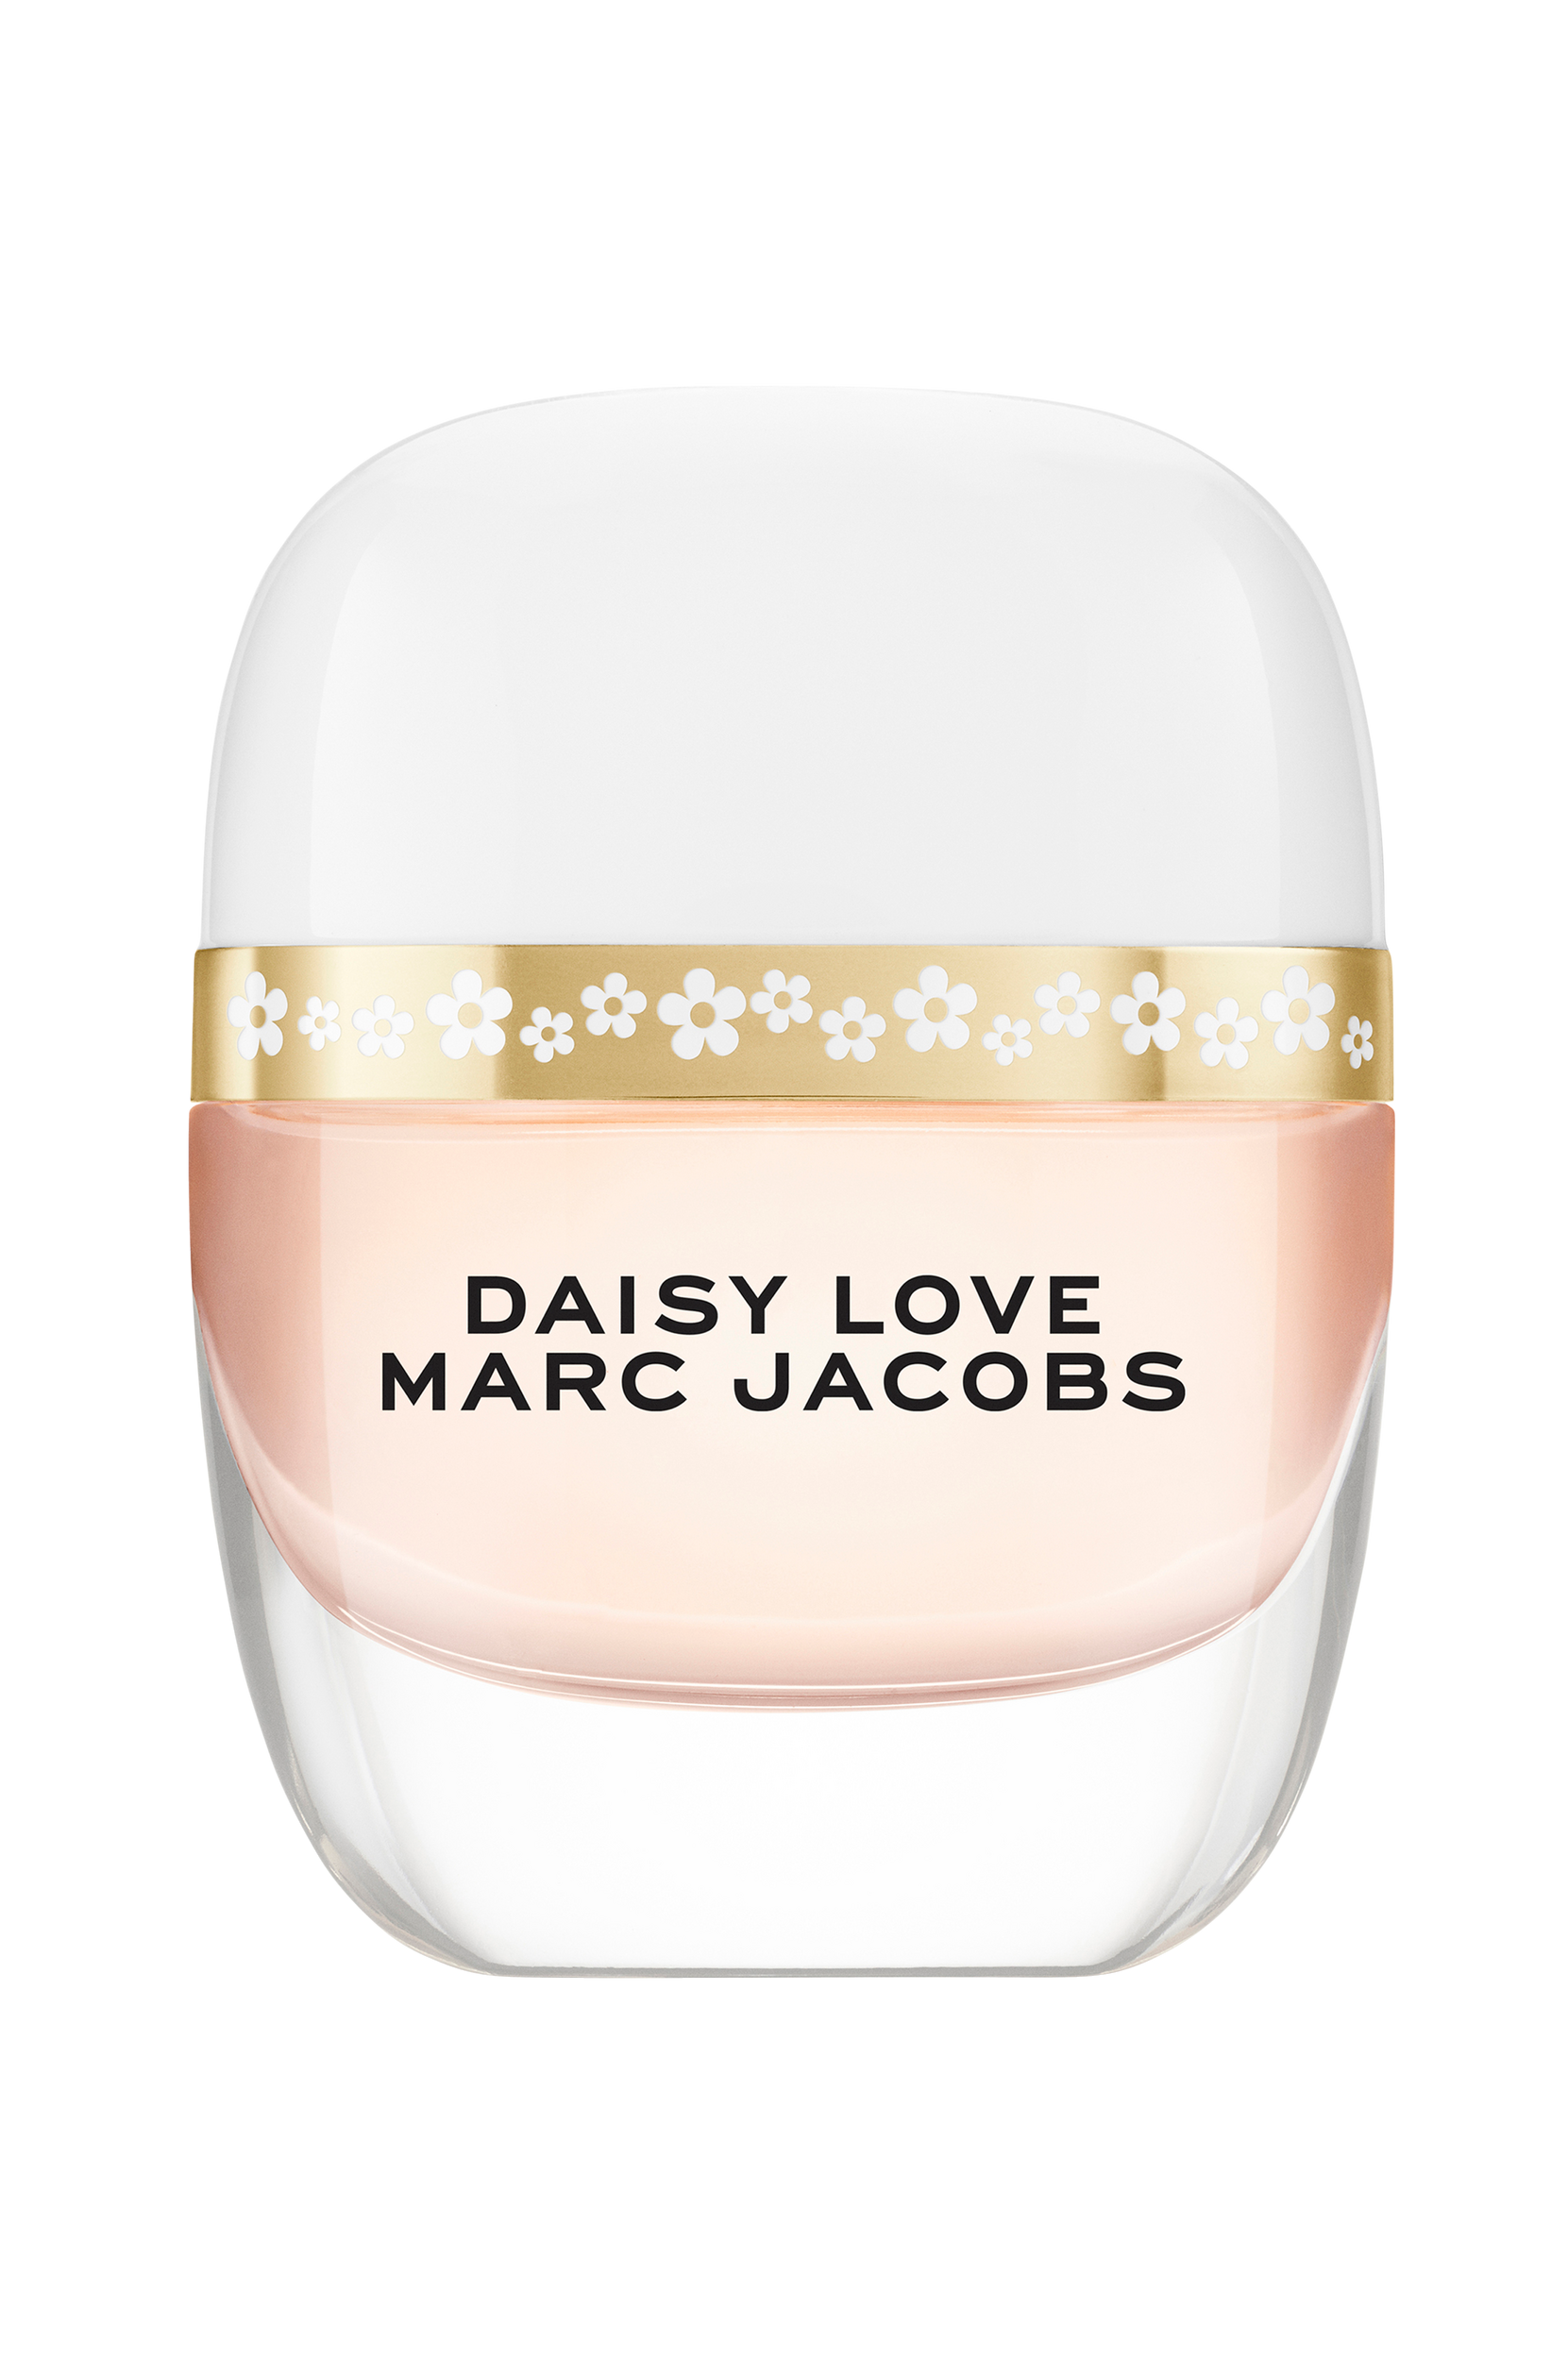 Daisy Love Edt 20 ml, Marc Jacobs